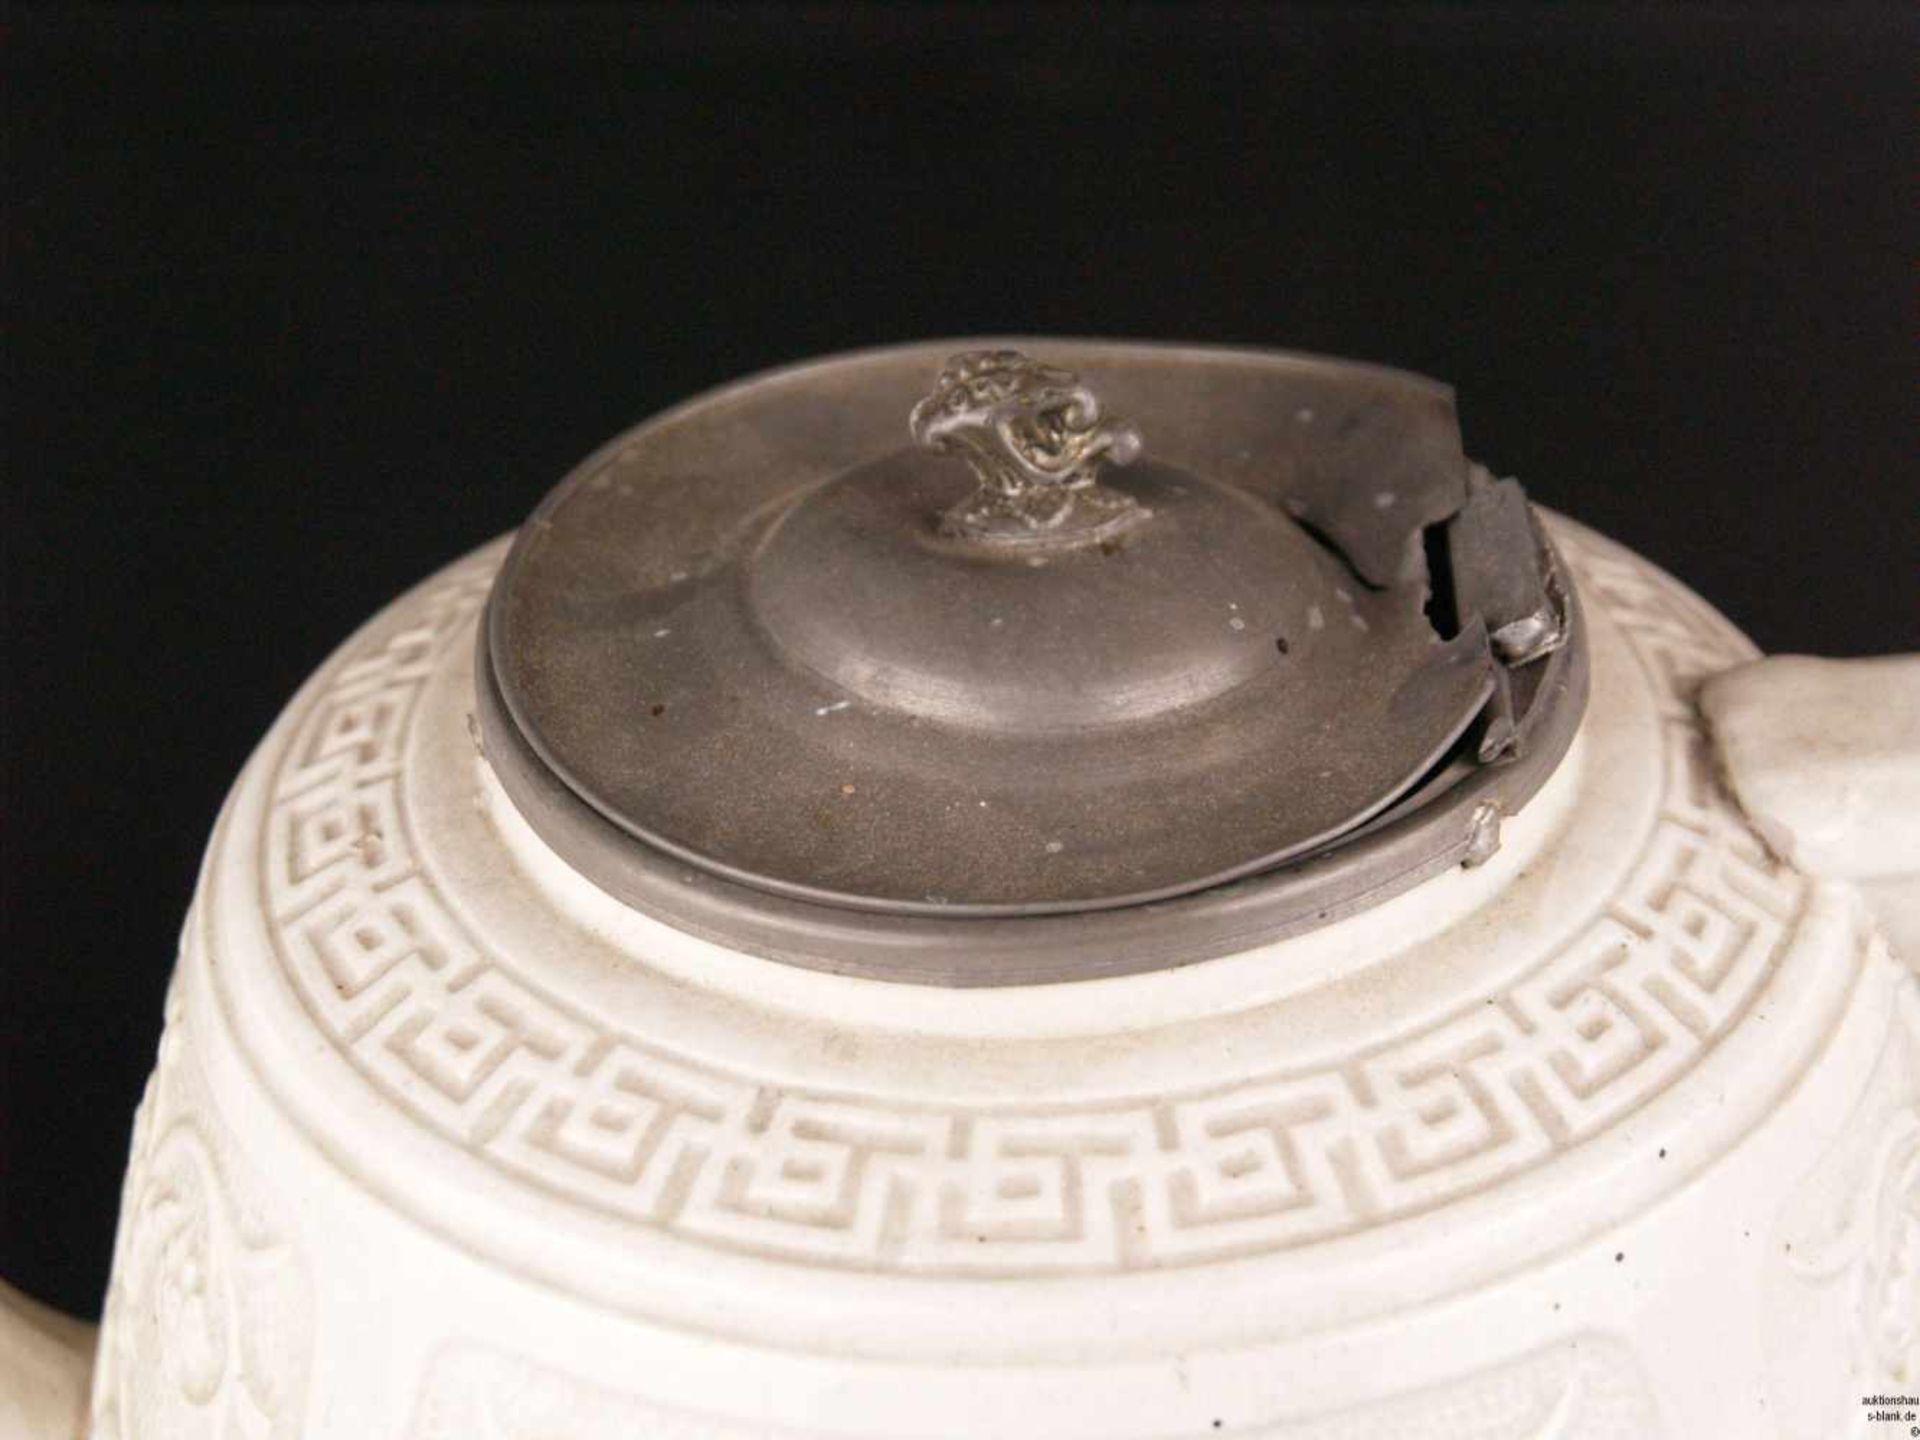 Große Teekanne - England 19.Jh., Steingut, cremefarben glasiert, mit ostasiatischem Reliefdekor, - Bild 2 aus 9